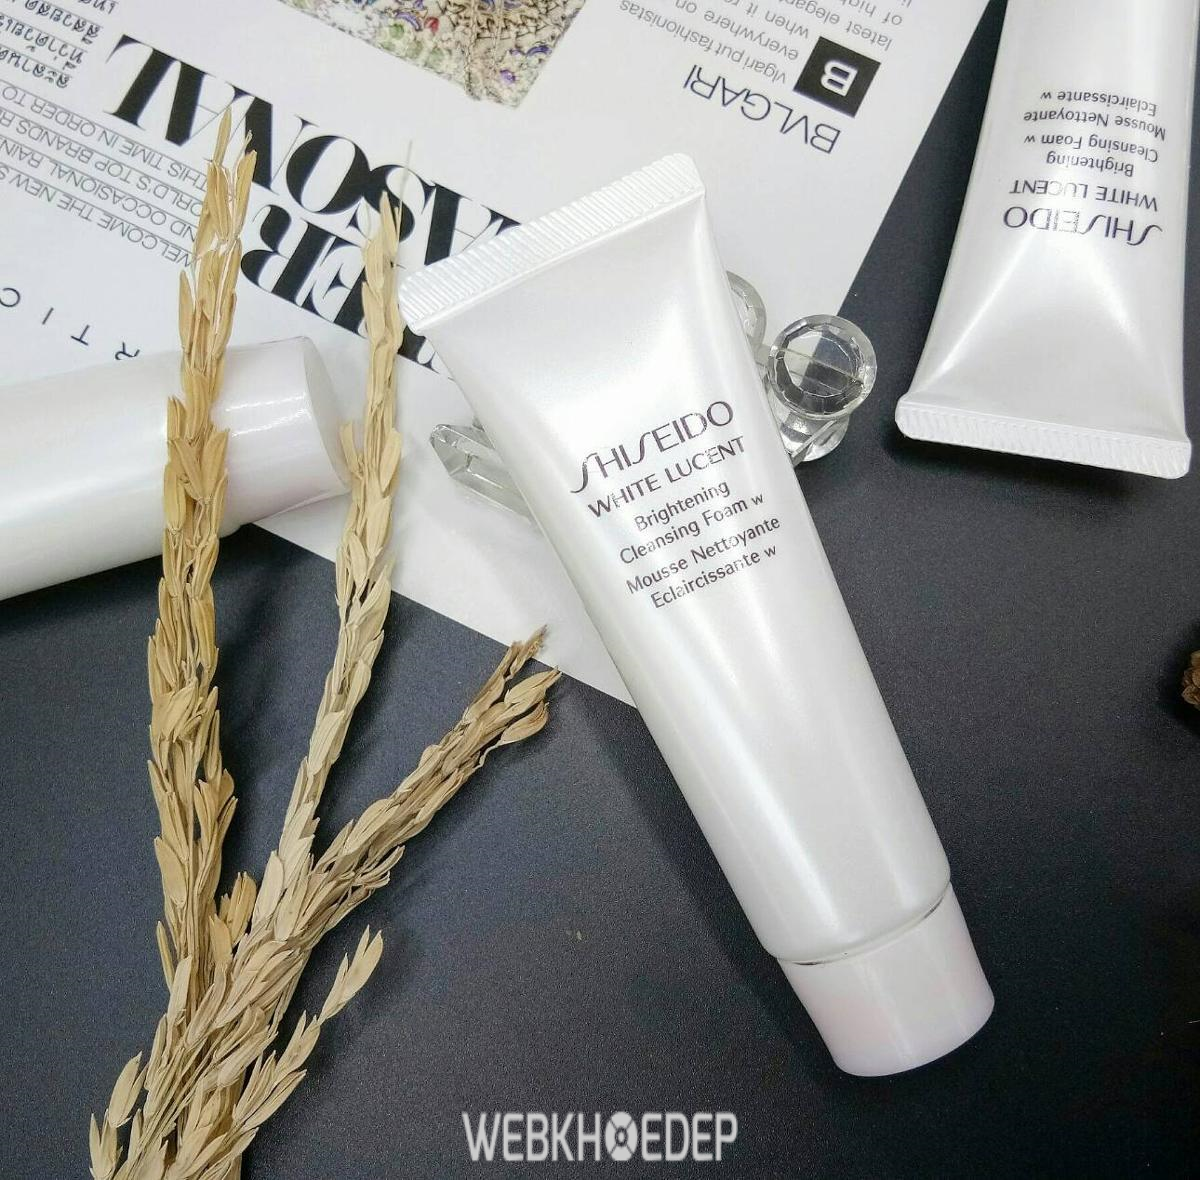 Sữa rửa mặt trắng da Shiseido có mùi thơm nhẹ dịu cùng khả năng làm sạch da hiệu quả sau mỗi lần sử dụng